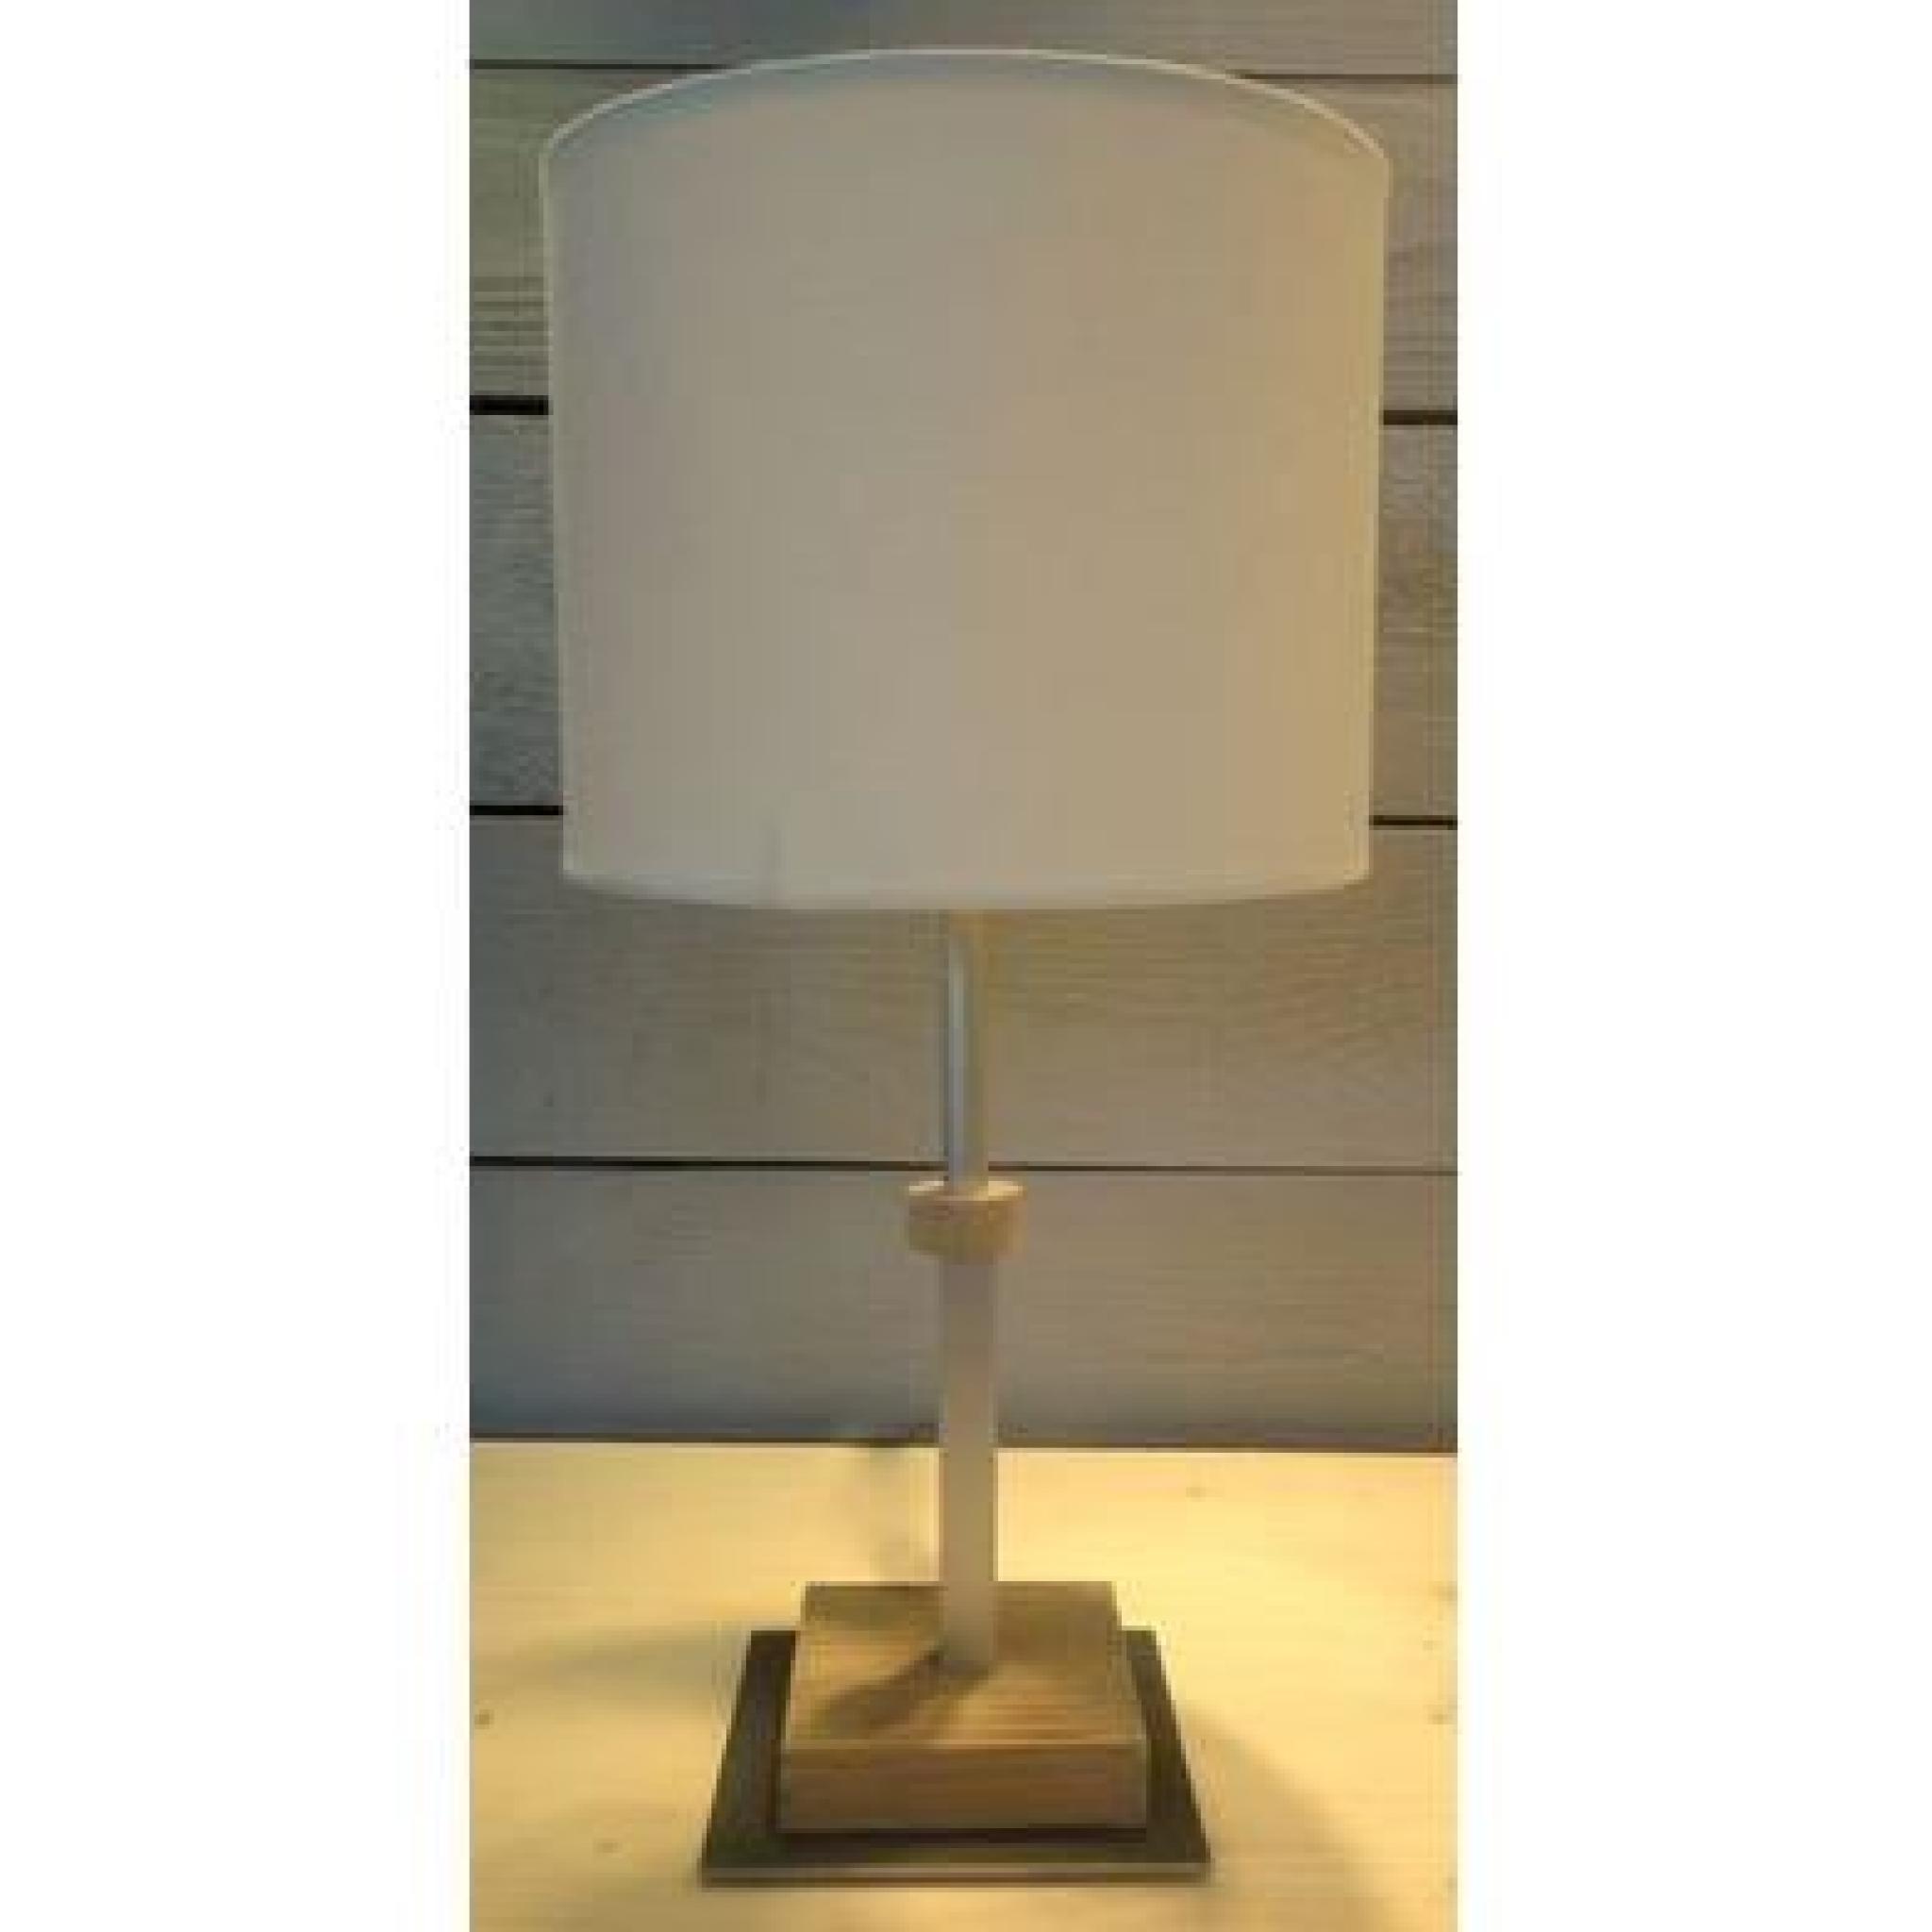 Lampe Cylindre en Bois Huilée 60W - Boutica-Design pas cher